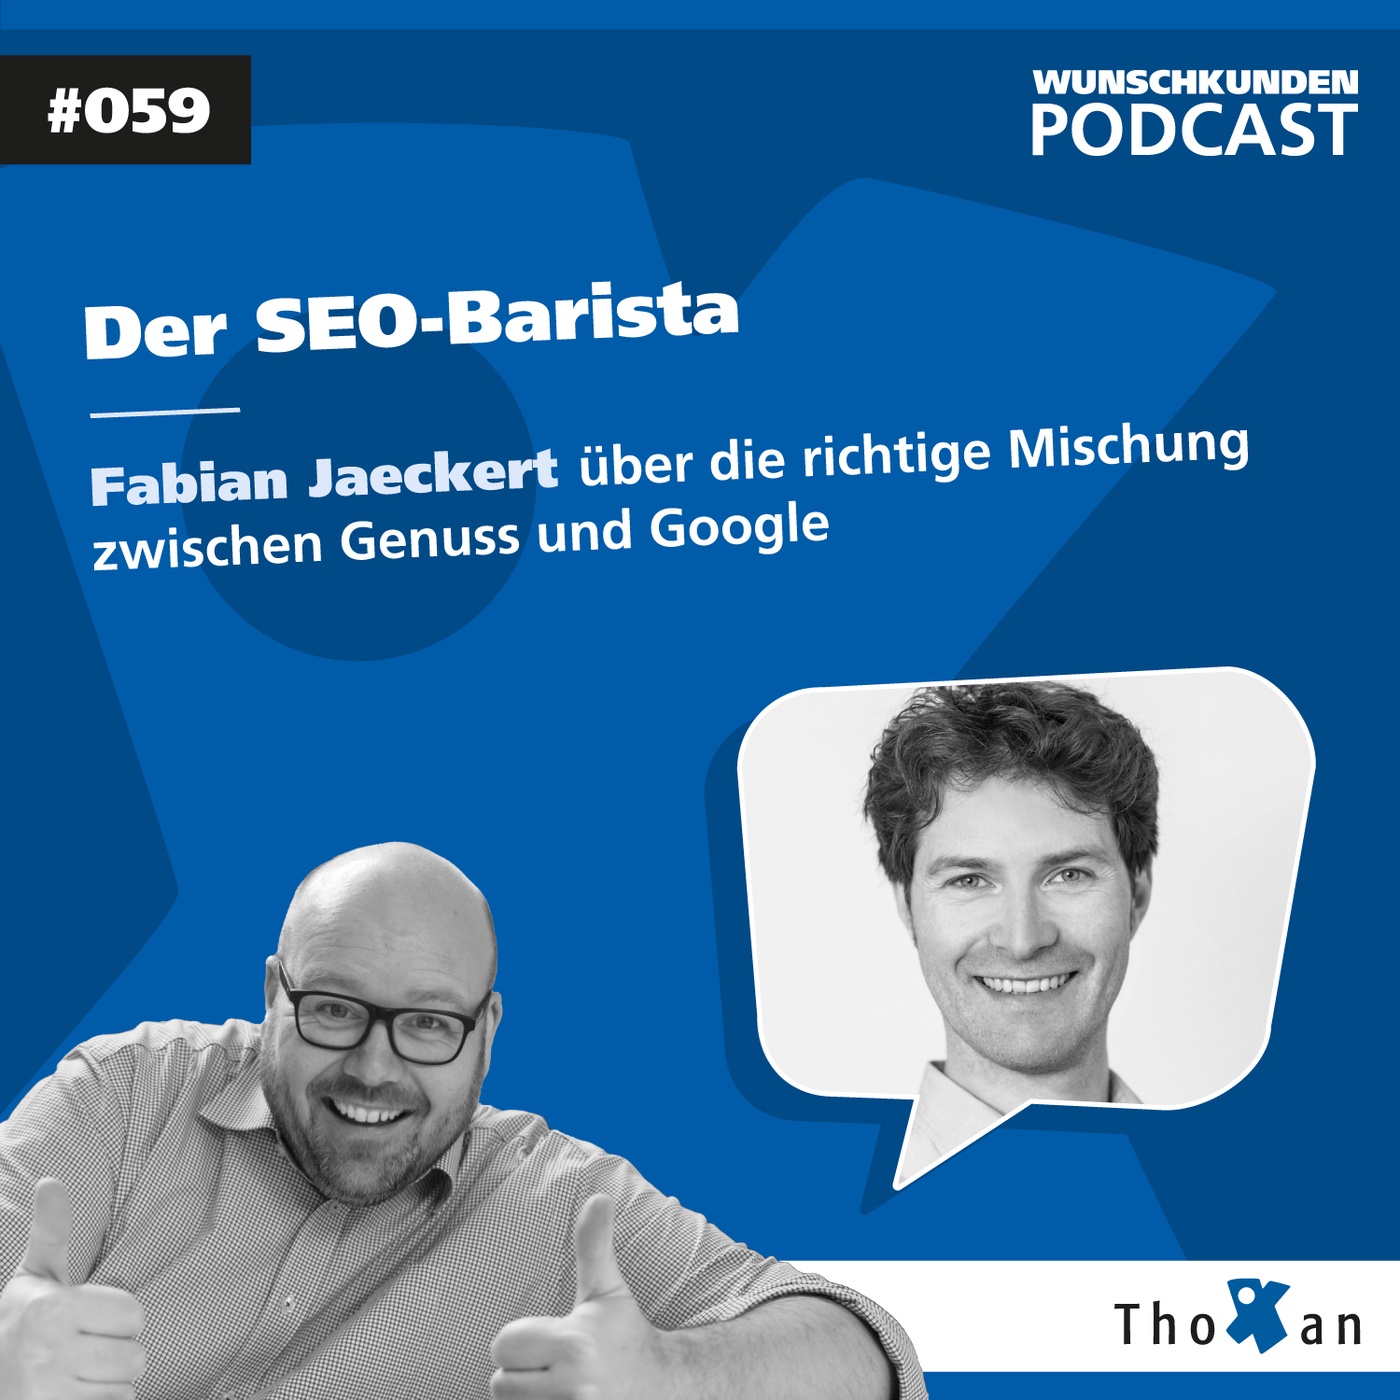 Der SEO-Barista: Fabian Jaeckert über die richtige Mischung zwischen Genuss und Google